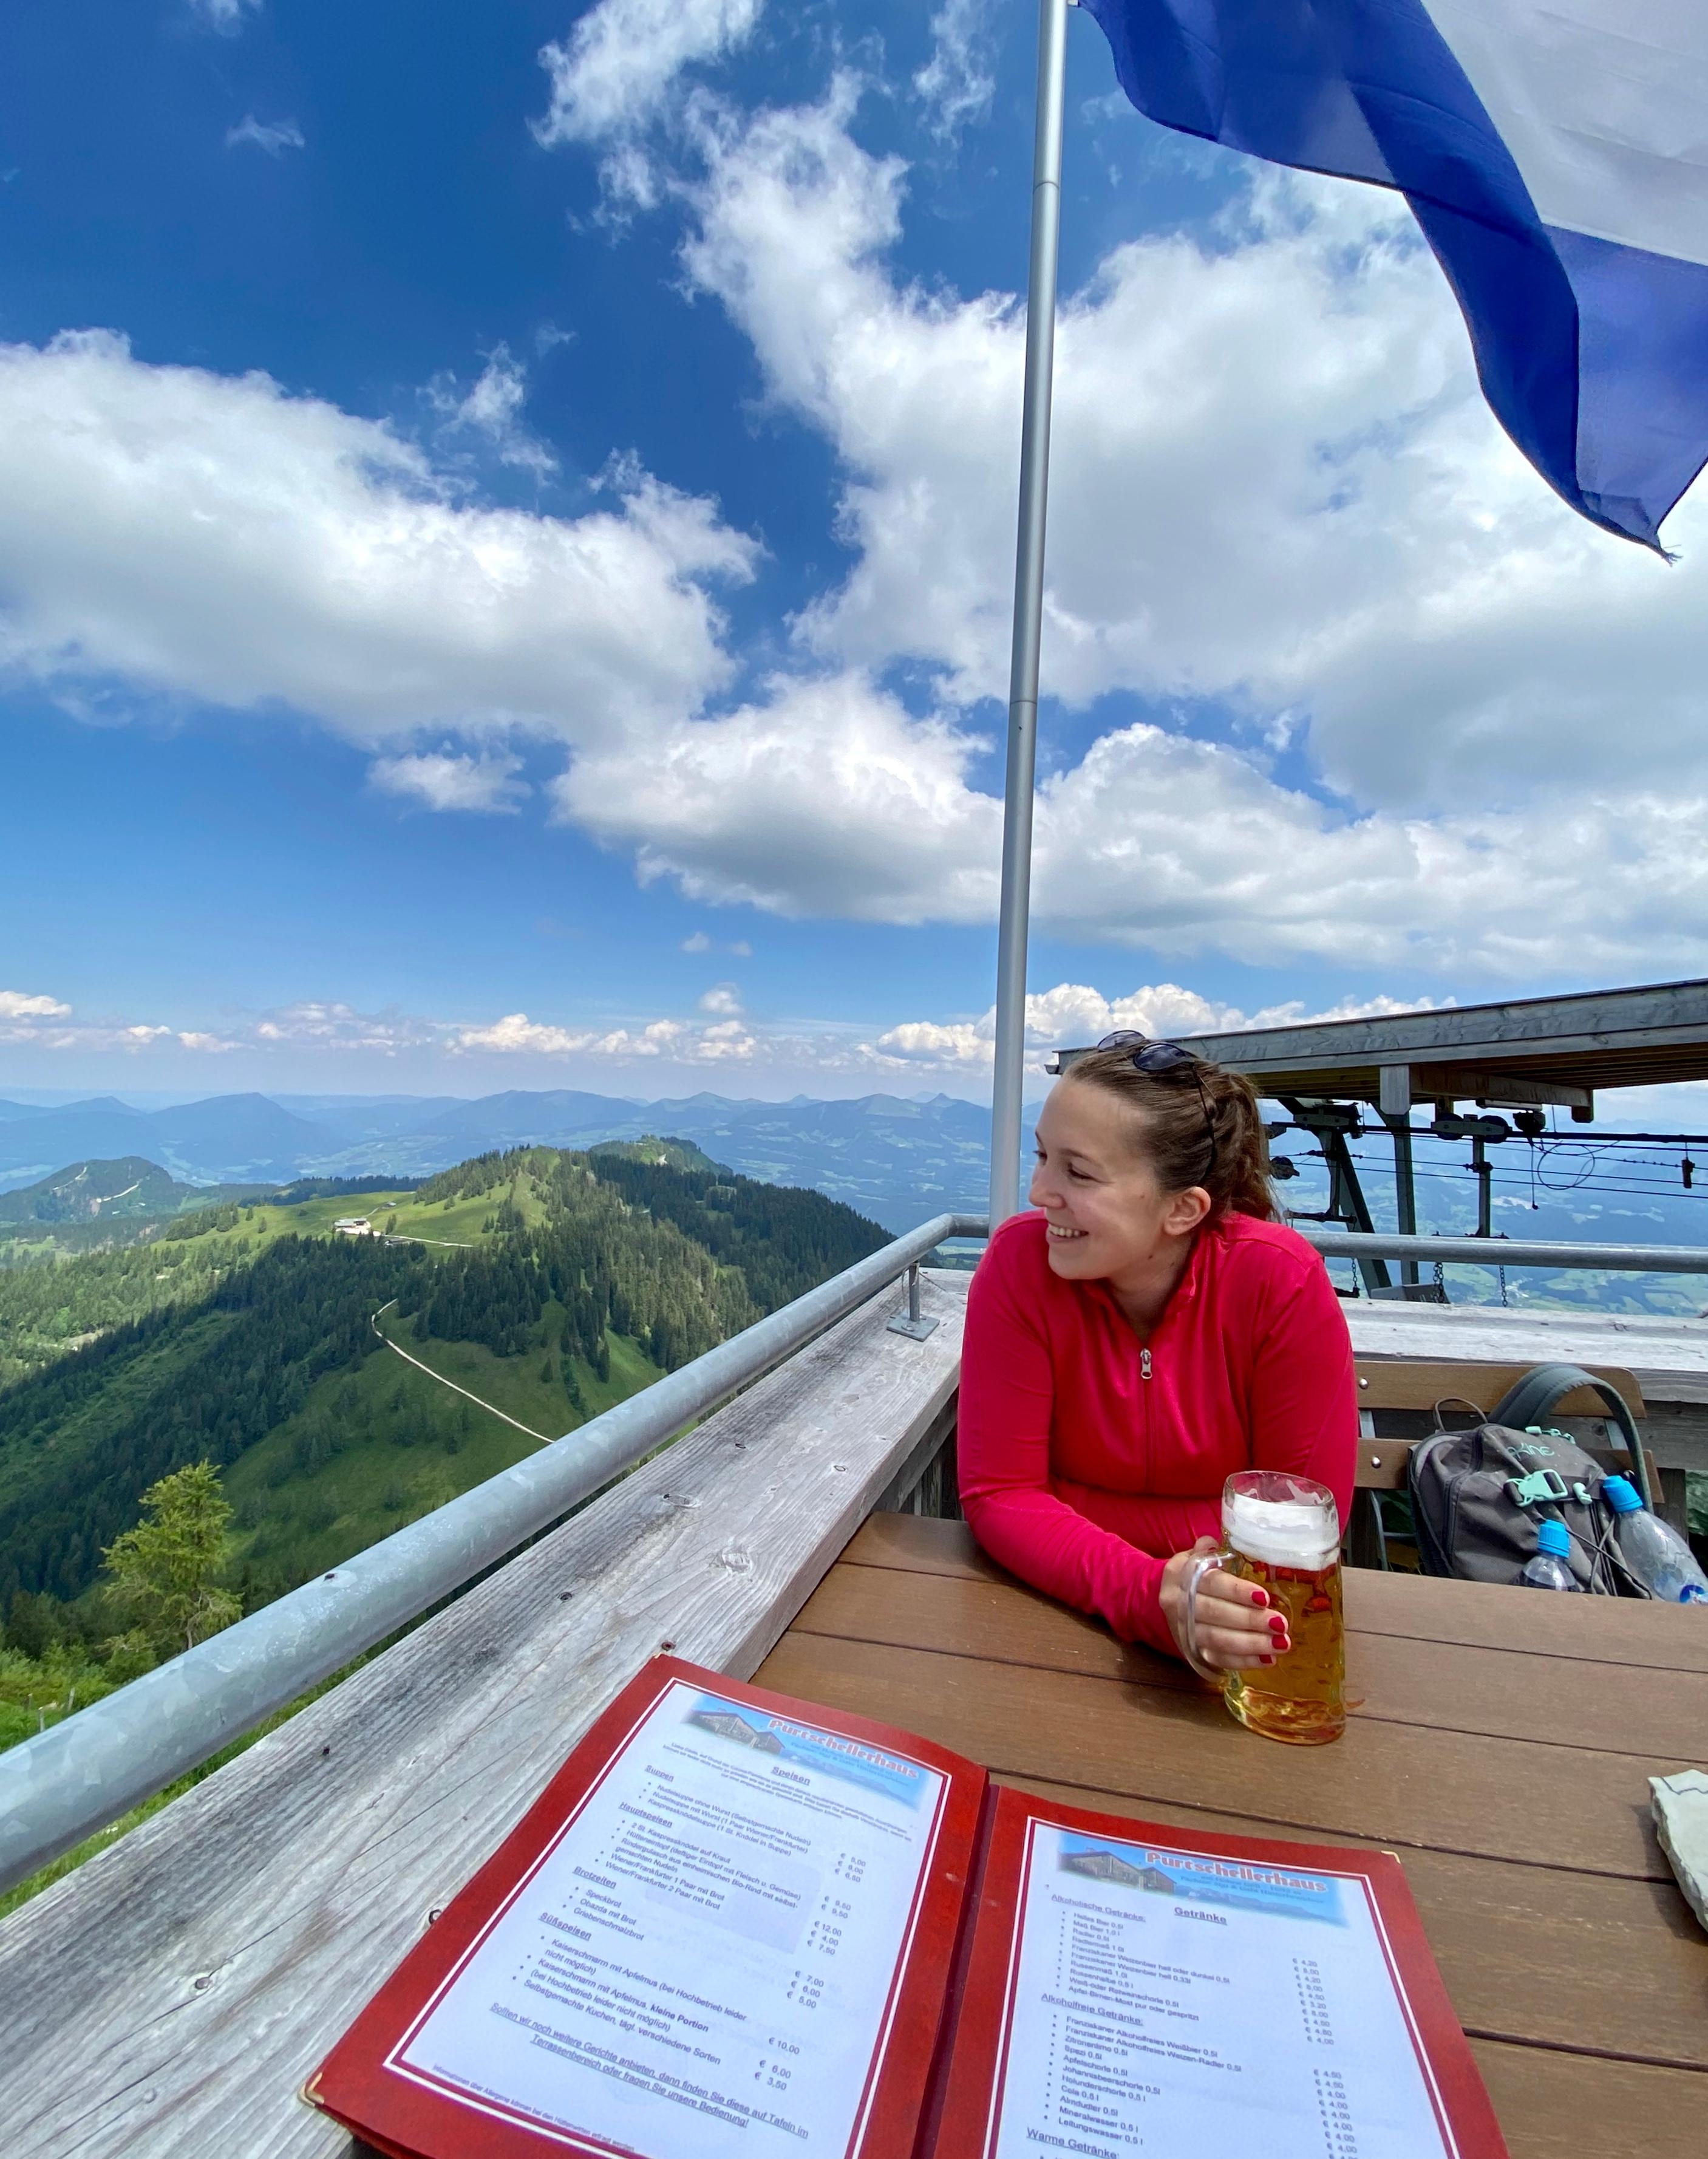 Nach dem #wandern ist das beste doch der Ausblick und ein kühles Radler auf der Hütte 🍻 #travelchallenge #berchtesgaden